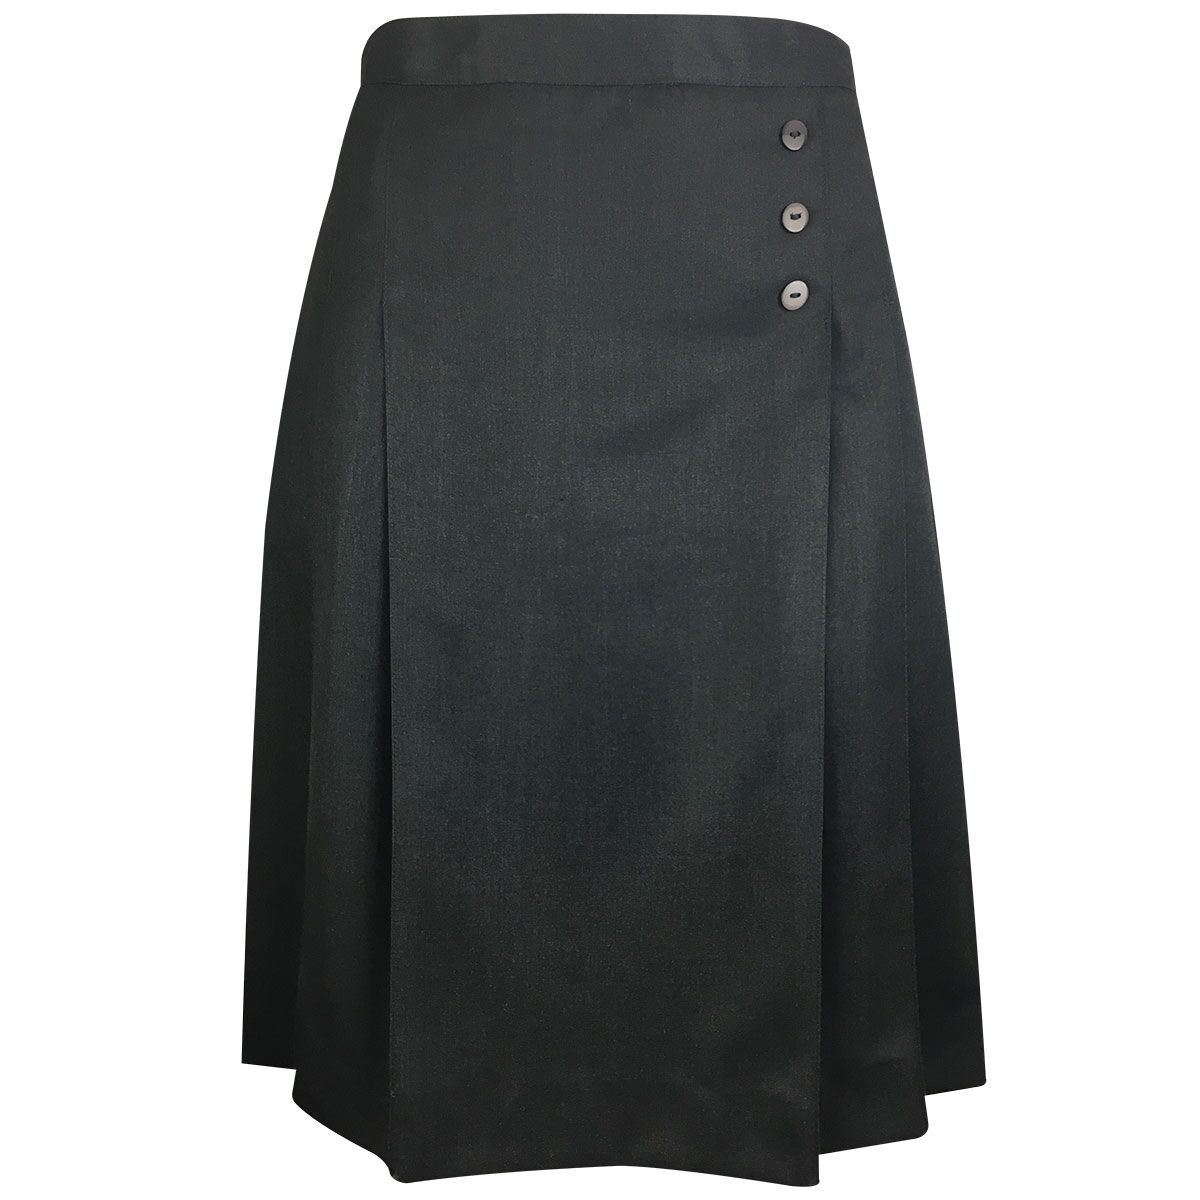 Skirt Formal - School Locker